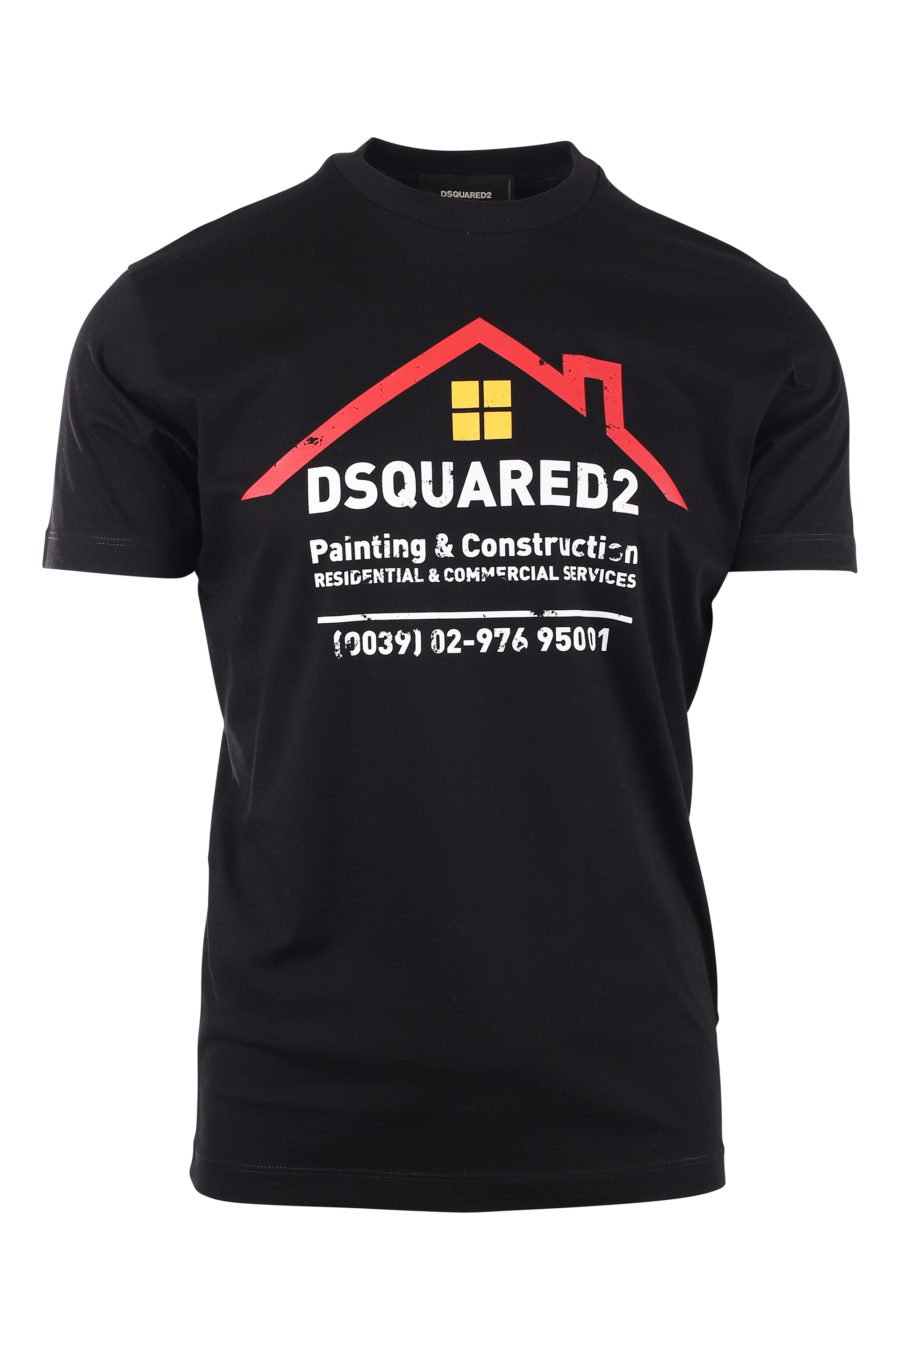 T-shirt noir avec logo de la construction - IMG 9713